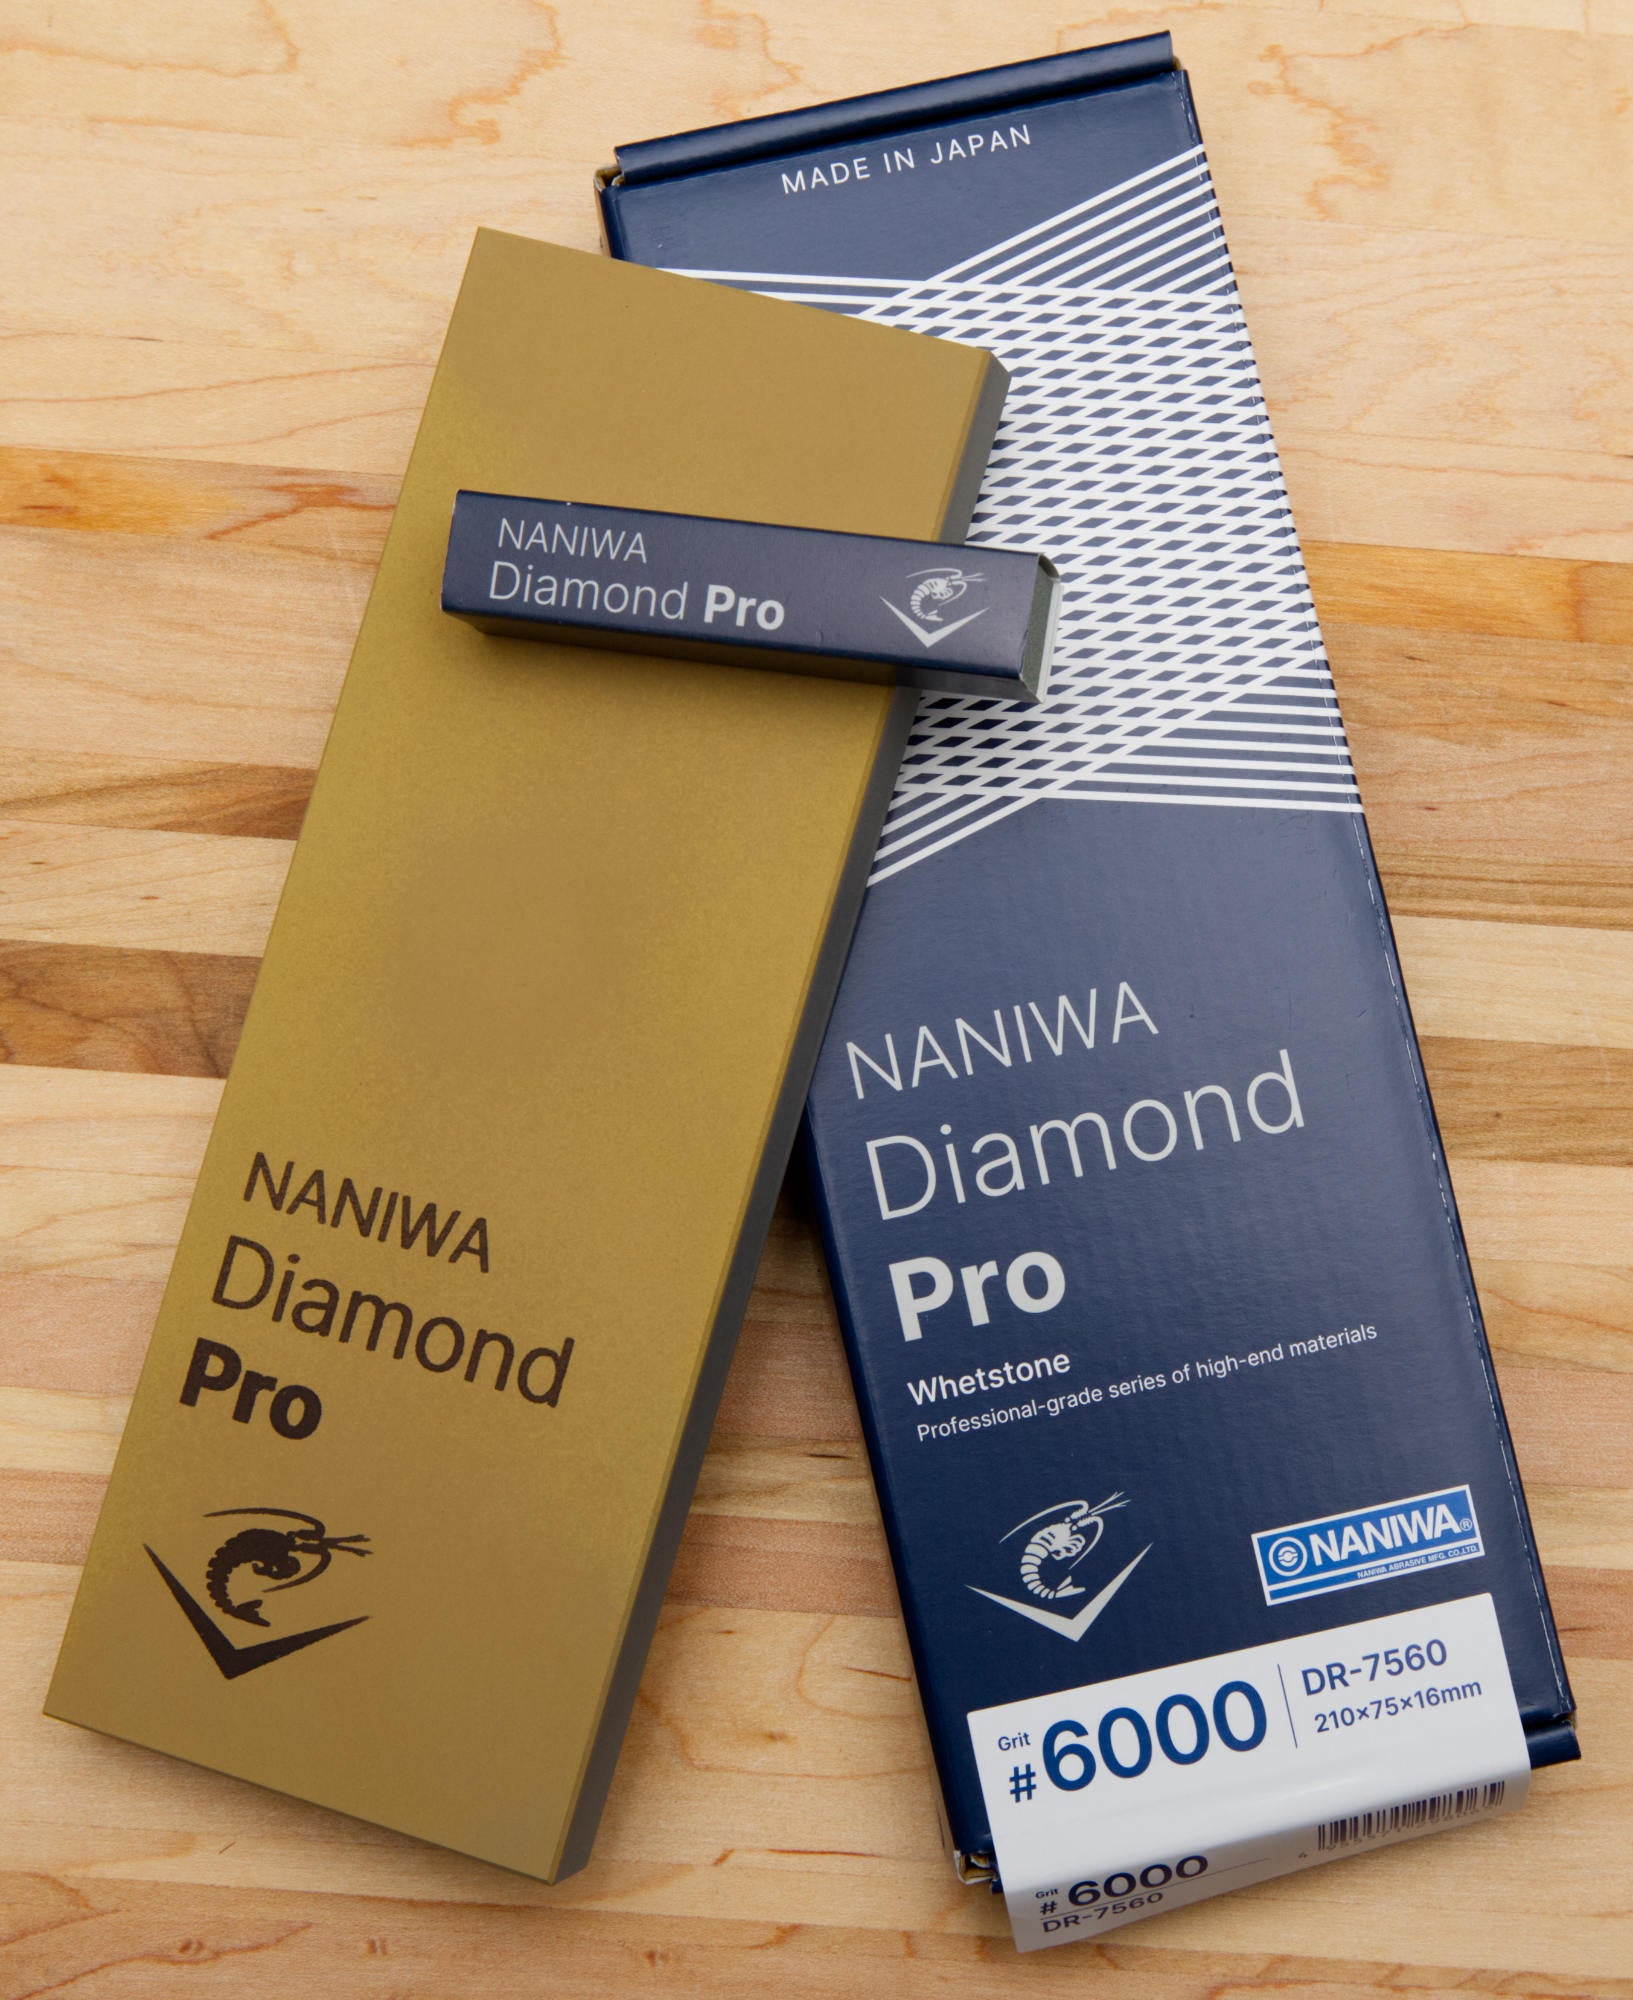 Naniwa Diamond Pro Stone, 6000 grit